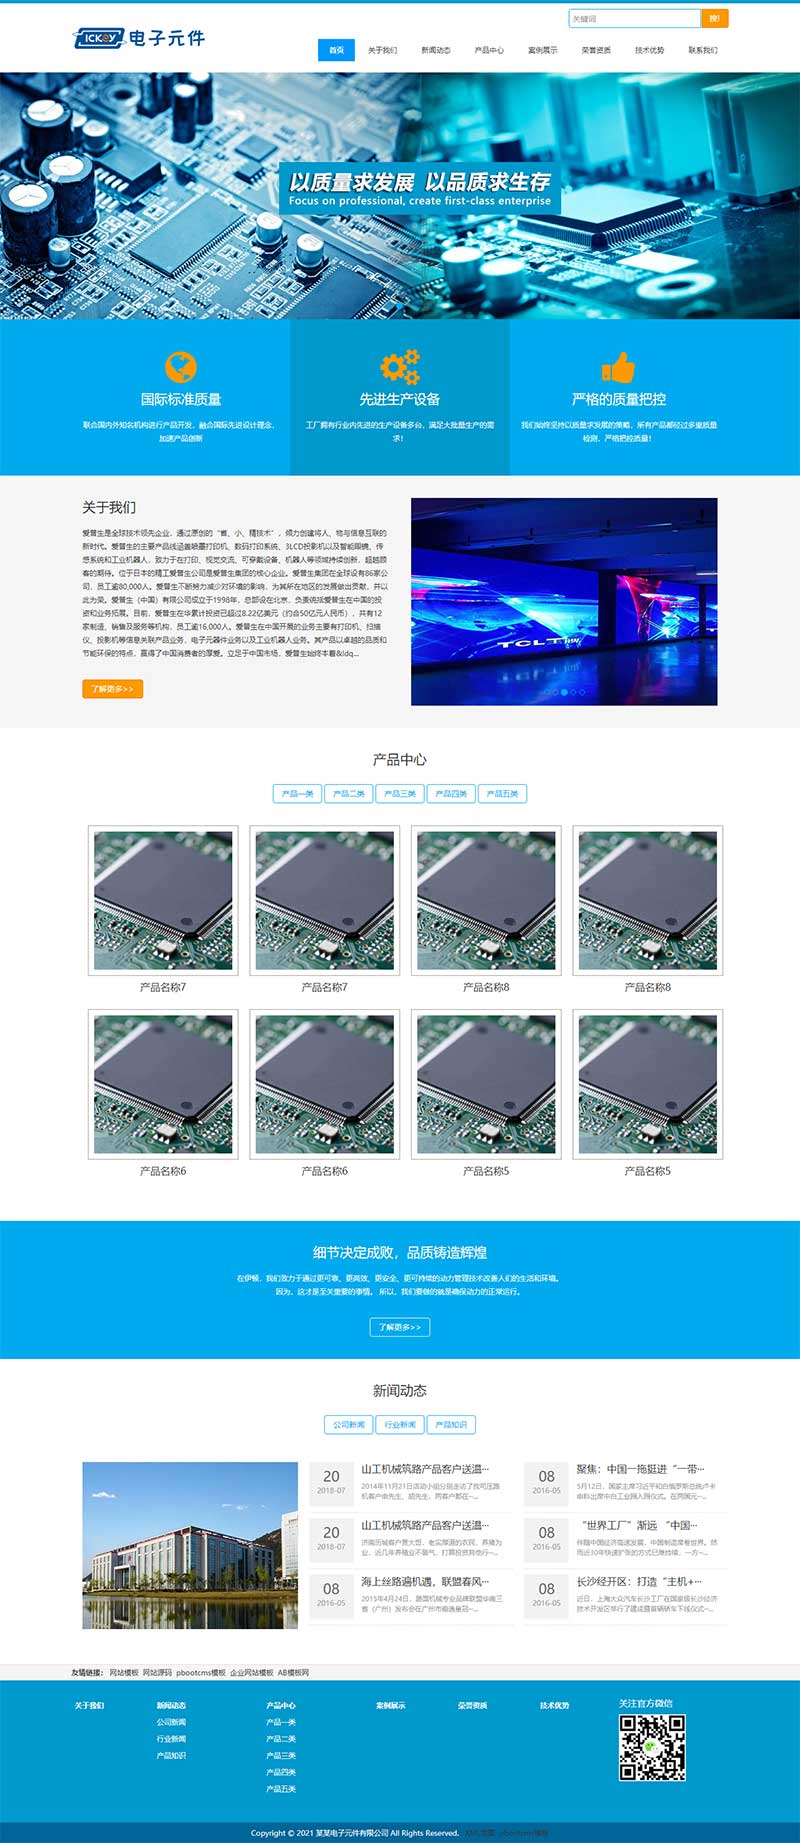 (自适应手机端)简约蓝色电路元件电子设备电路板网站源码电脑端展示图片